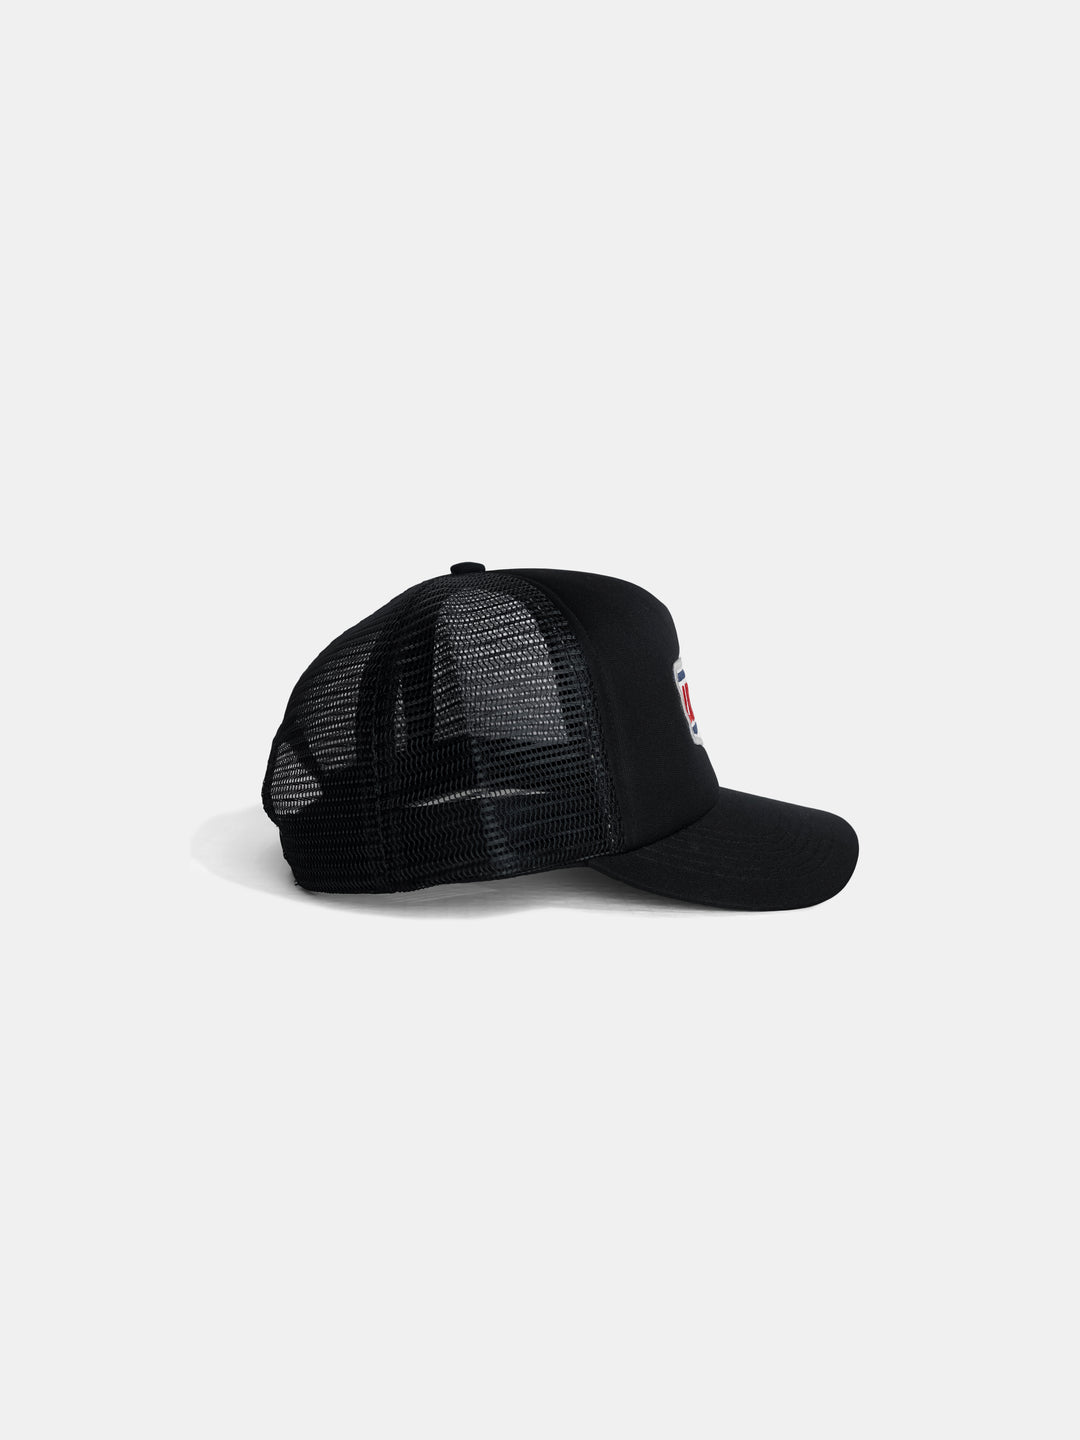 The Motor Club Trucker Hat Black - Side